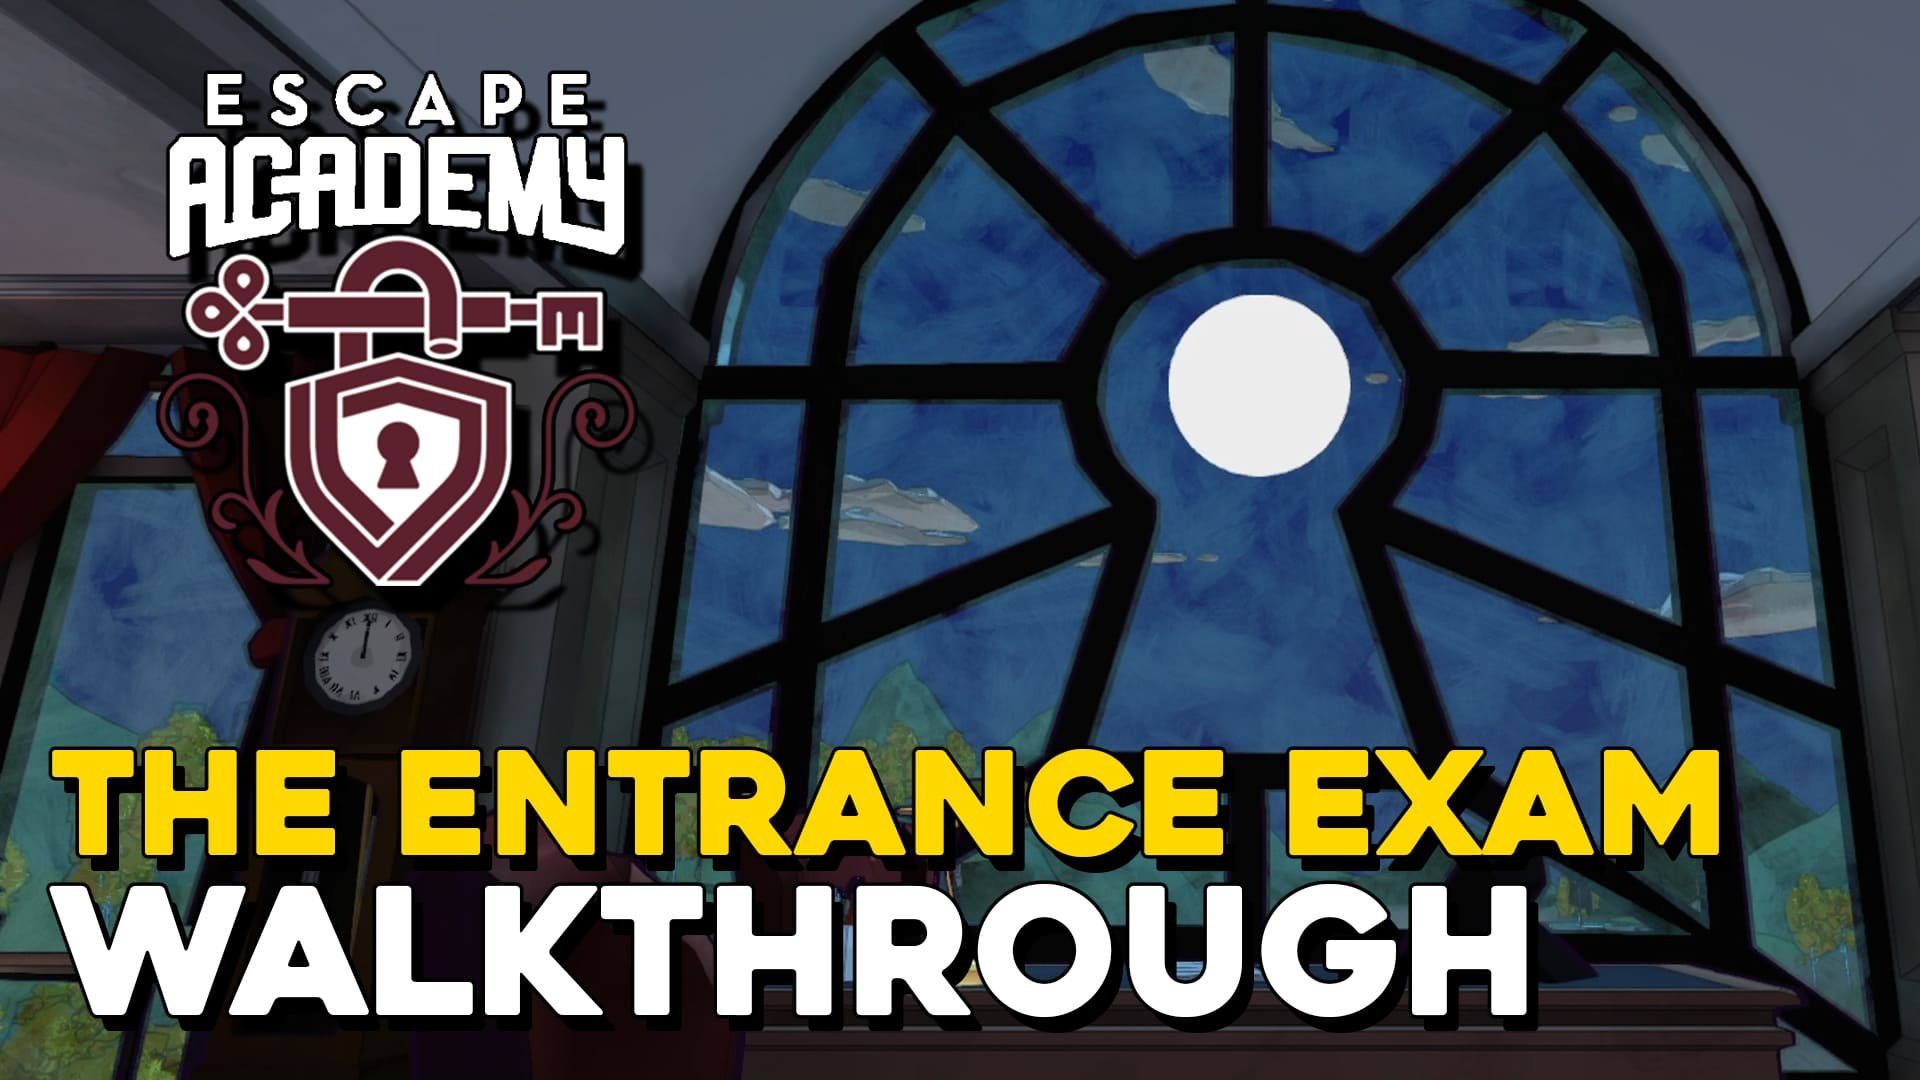 Escape Academy The Entrance Exam Walkthrough